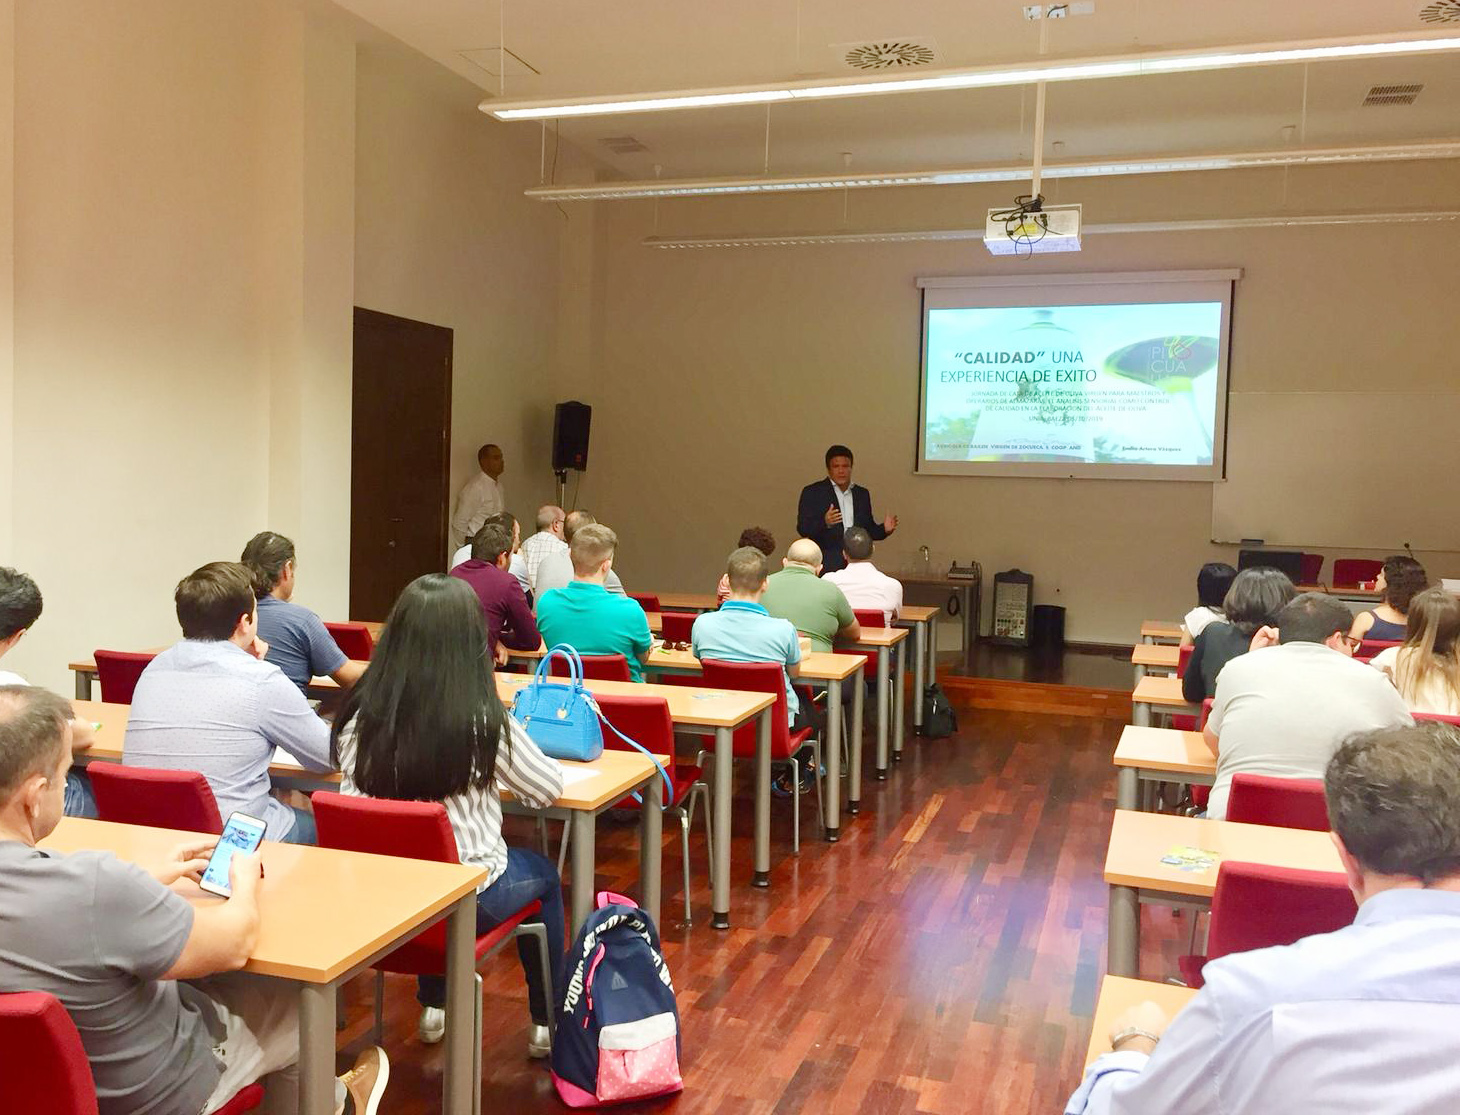 Rodrigo Jan, director de Pieralisi para Espaa y Portugal, durante su intervencin en el curso de cata celebrado en la UNIA...